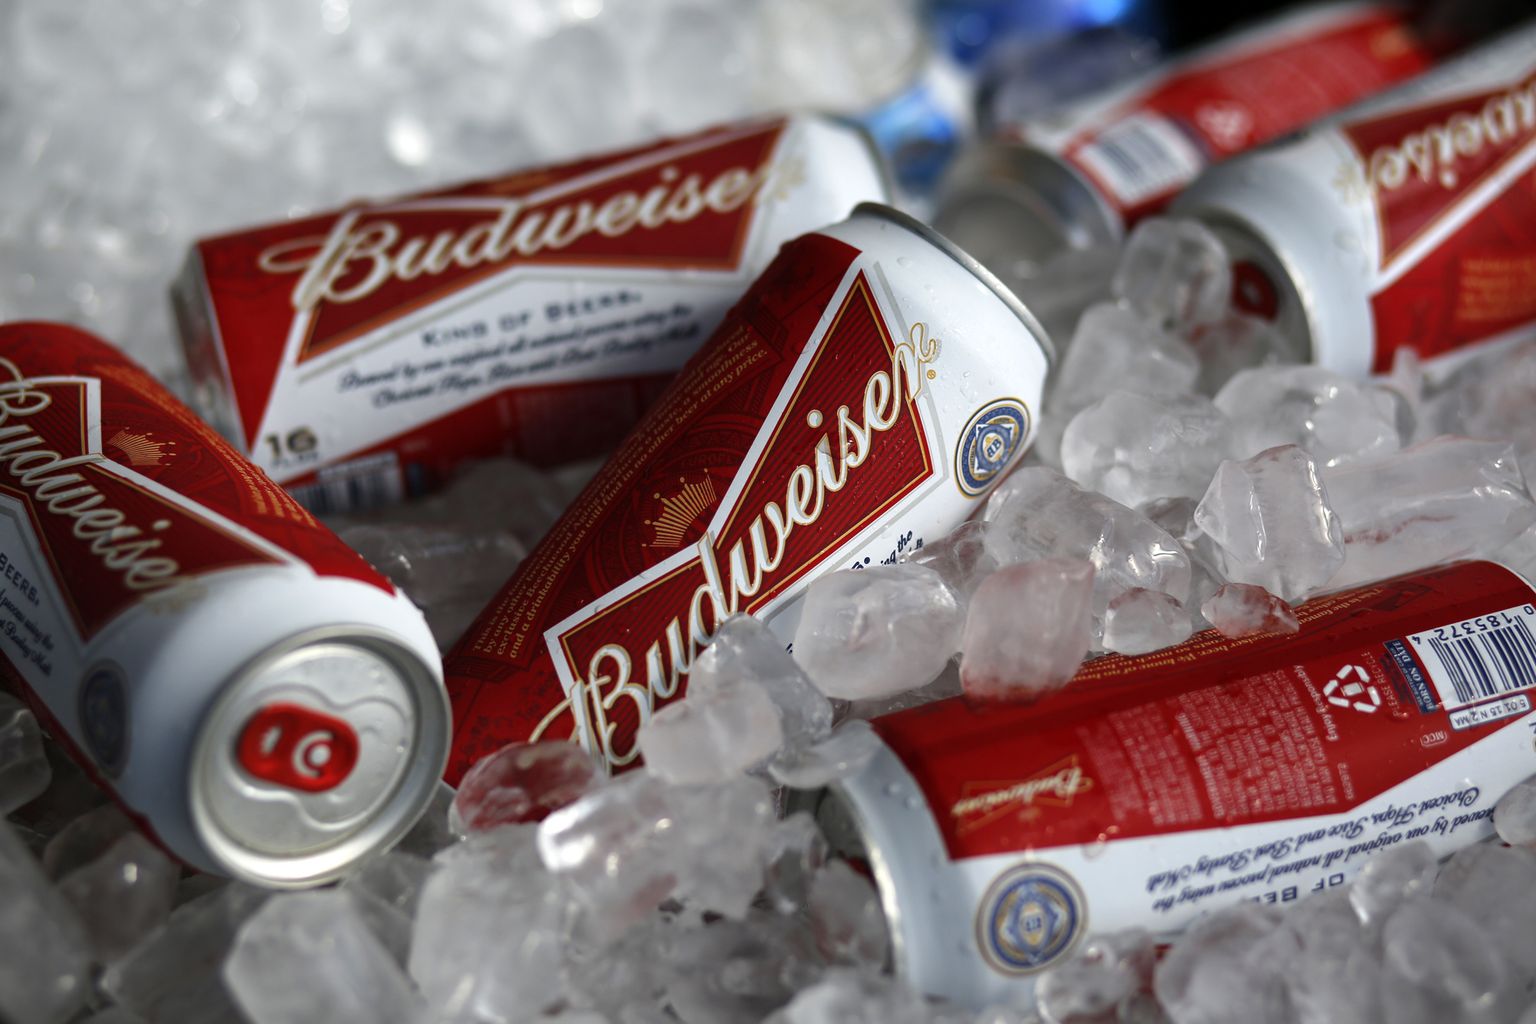 Budweiseri punases purgis, alkoholi sisaldav õlu jääbki Kataris ilmselt fännidele puutumatuks. Alkoholivaba õlu on sineses anumas.